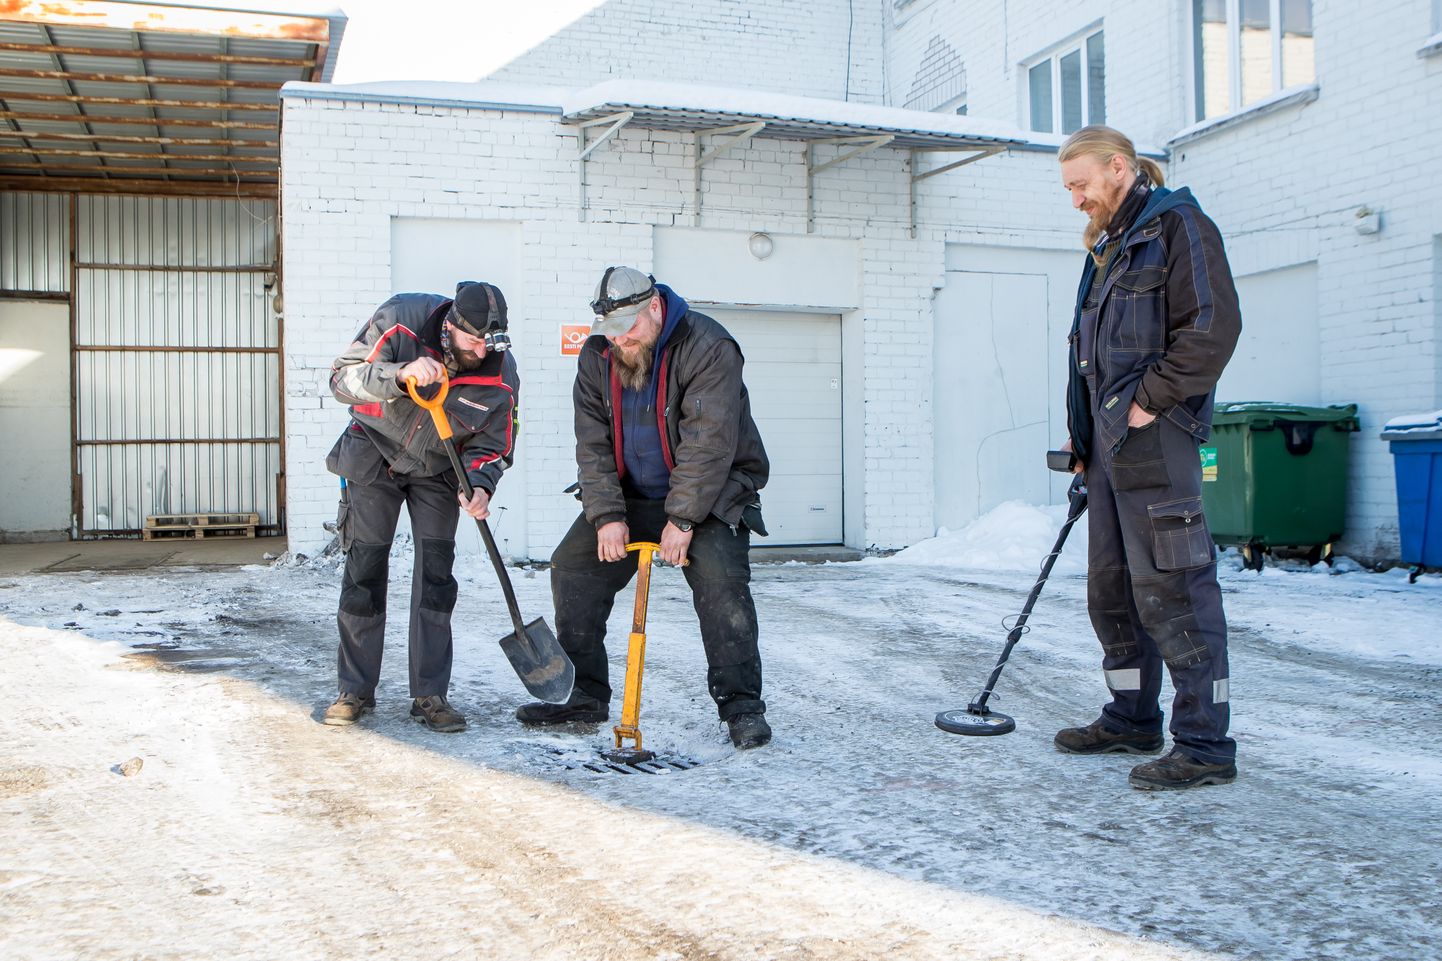 TÖÖ KIIDAB TEGIJAT: Torumehed Tarmo Sirgo, Margus Lasn ja Margus Õunpuu kasutavad jää ja lume alt kanalisatsiooniluukide leidmiseks spetsiaalset varustust.